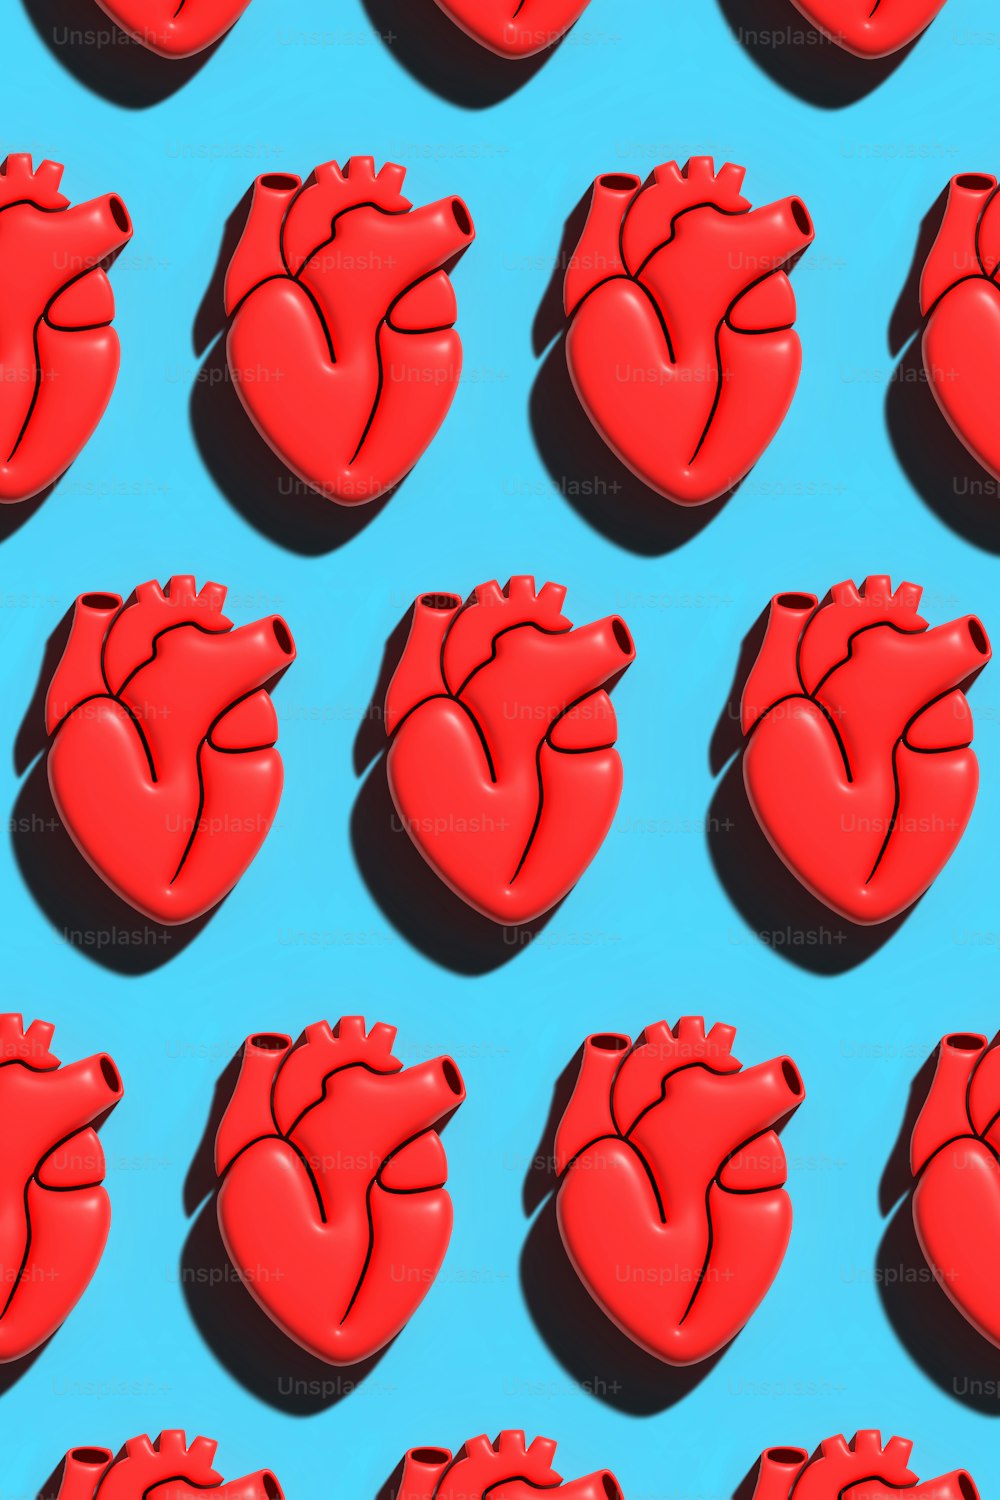 Un grupo de corazones rojos sentados encima de una superficie azul